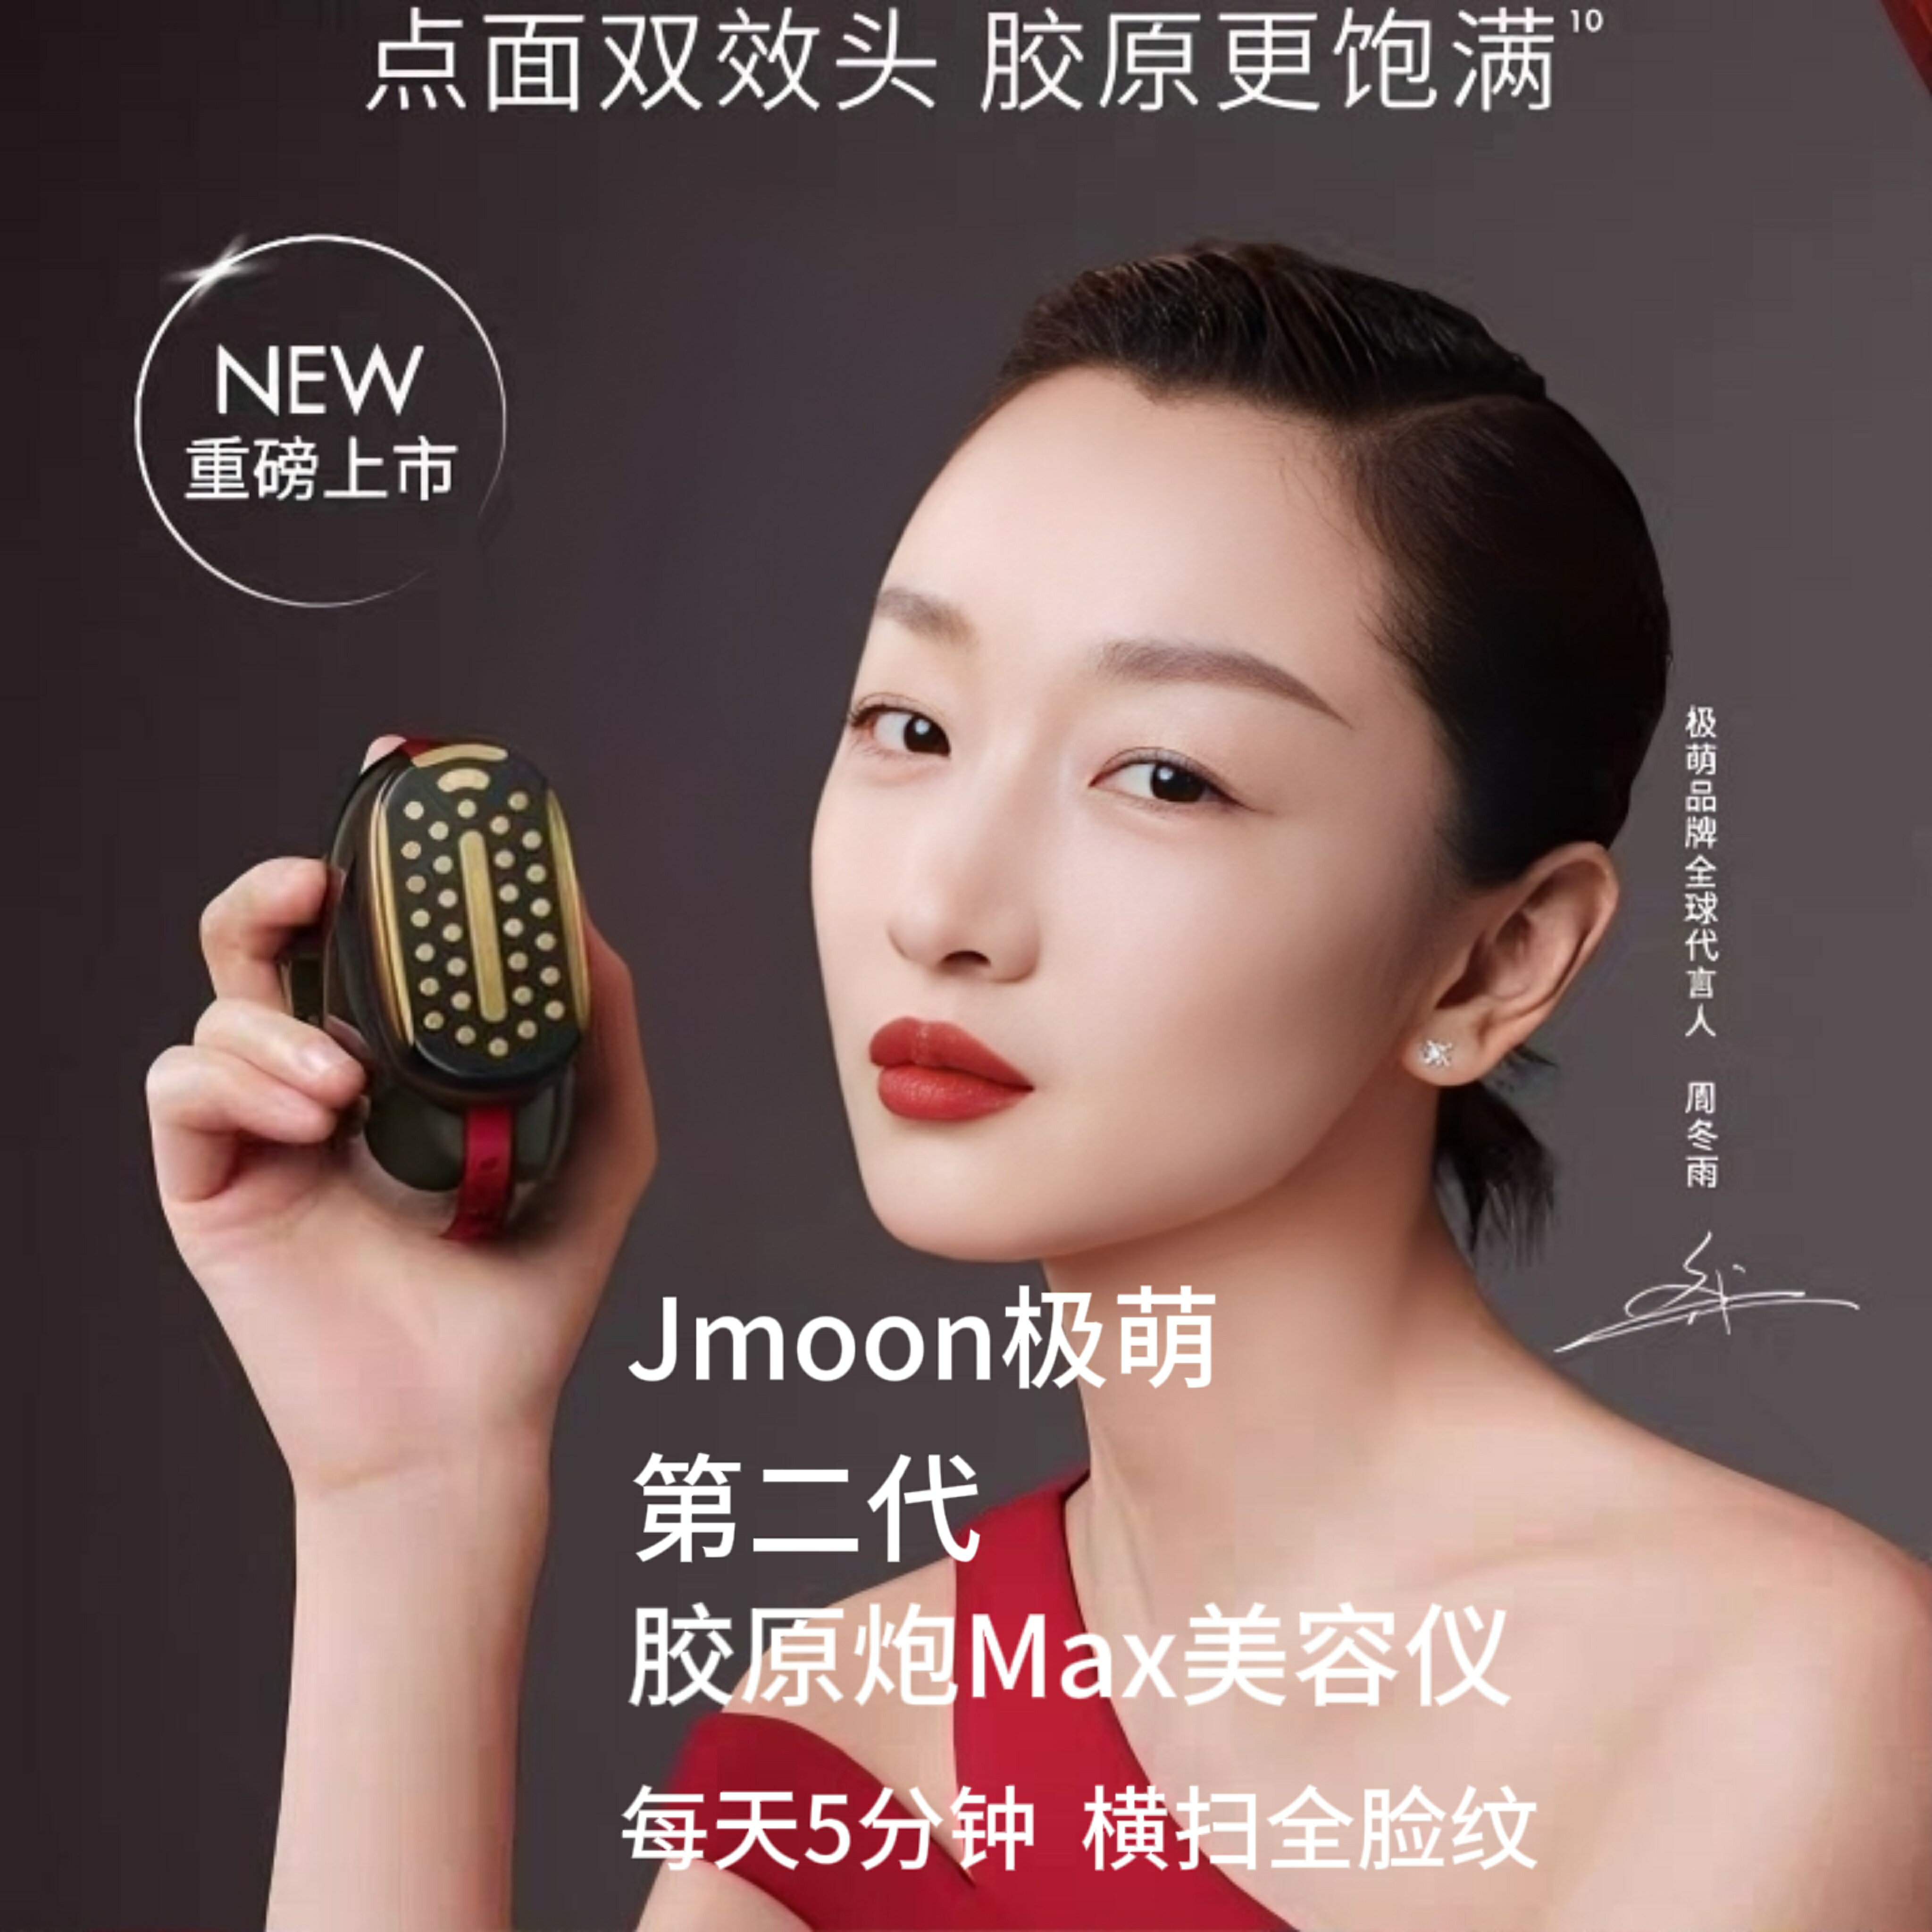 【新品熱銷】Jmoon第二代極萌膠原炮Max熨斗美容儀臉部提拉緊致女-樂購